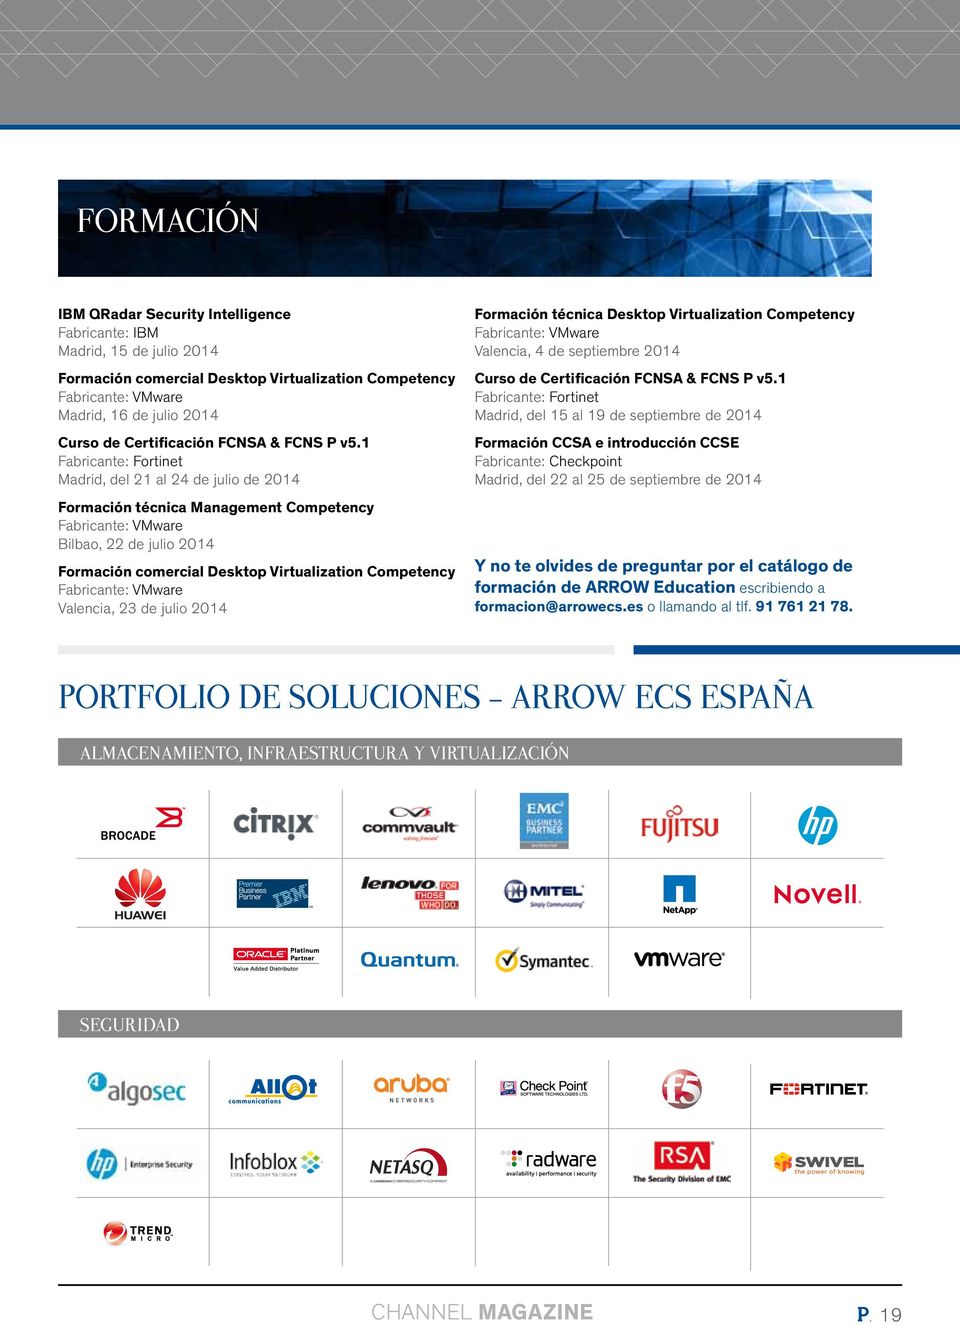 1 Fabricante: Fortinet Madrid, del 21 al 24 de julio de 2014 Formación técnica Management Competency Fabricante: VMware Bilbao, 22 de julio 2014 Formación comercial Desktop Virtualization Competency